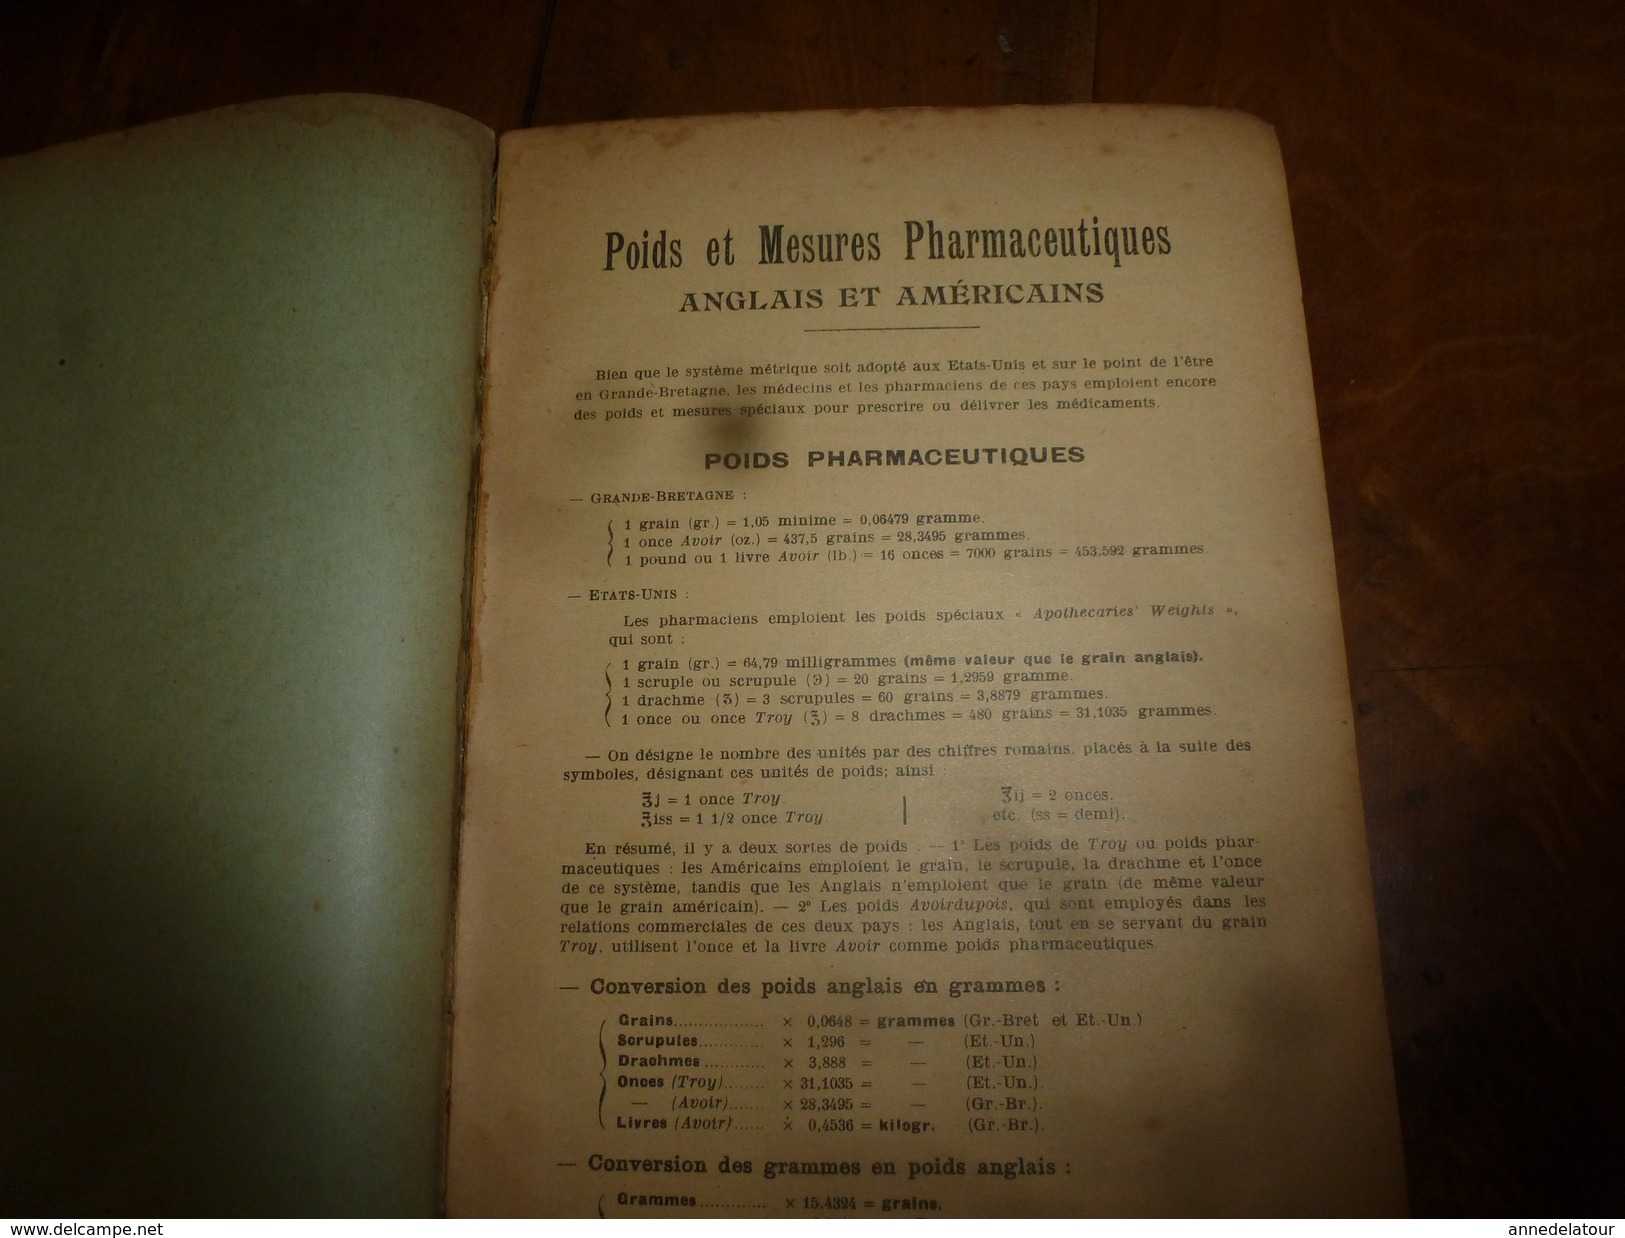 1908 1ère éd. Labo. Pharmaceutique de DAUSSE Ainé : Essais Préparations Galéniques ,nombreuses photos dans les ateliers